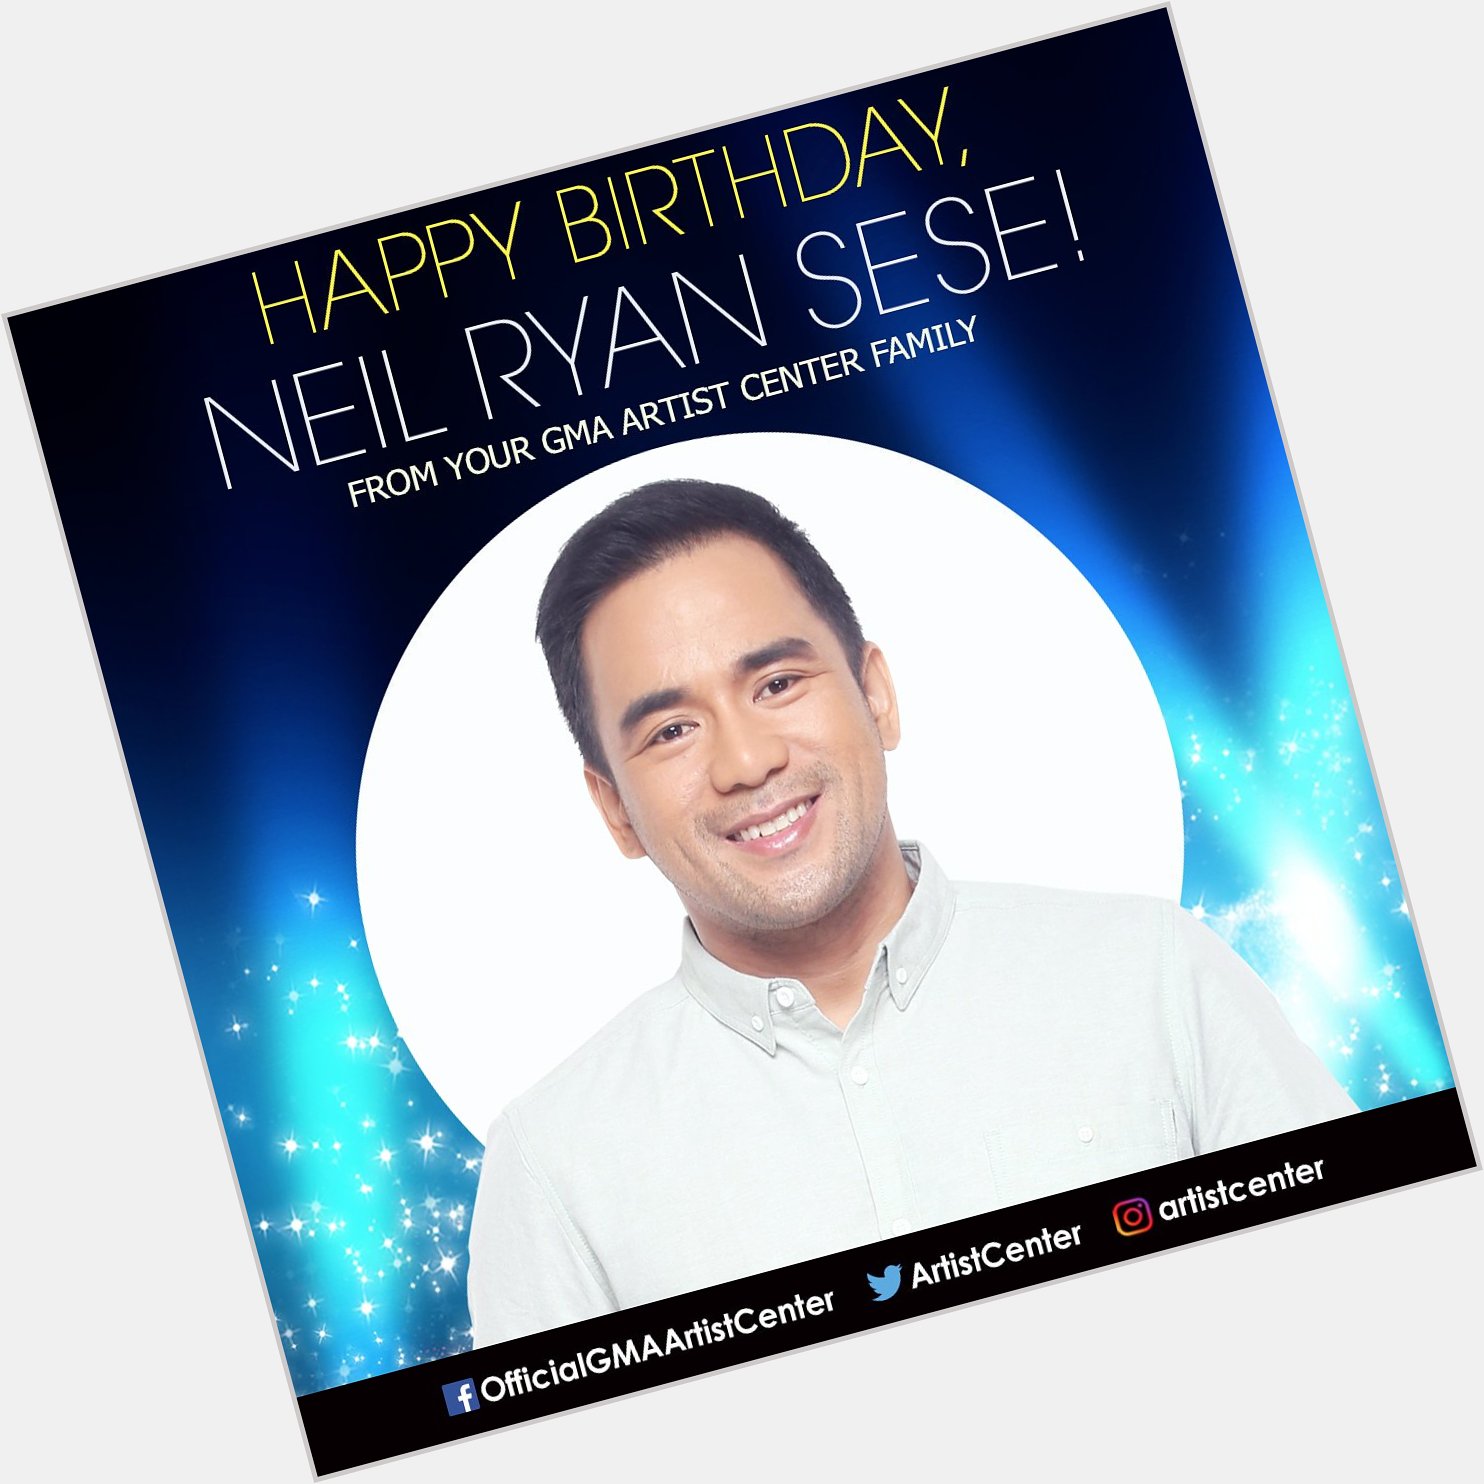 Happy Birthday to star Neil Ryan Sese! 